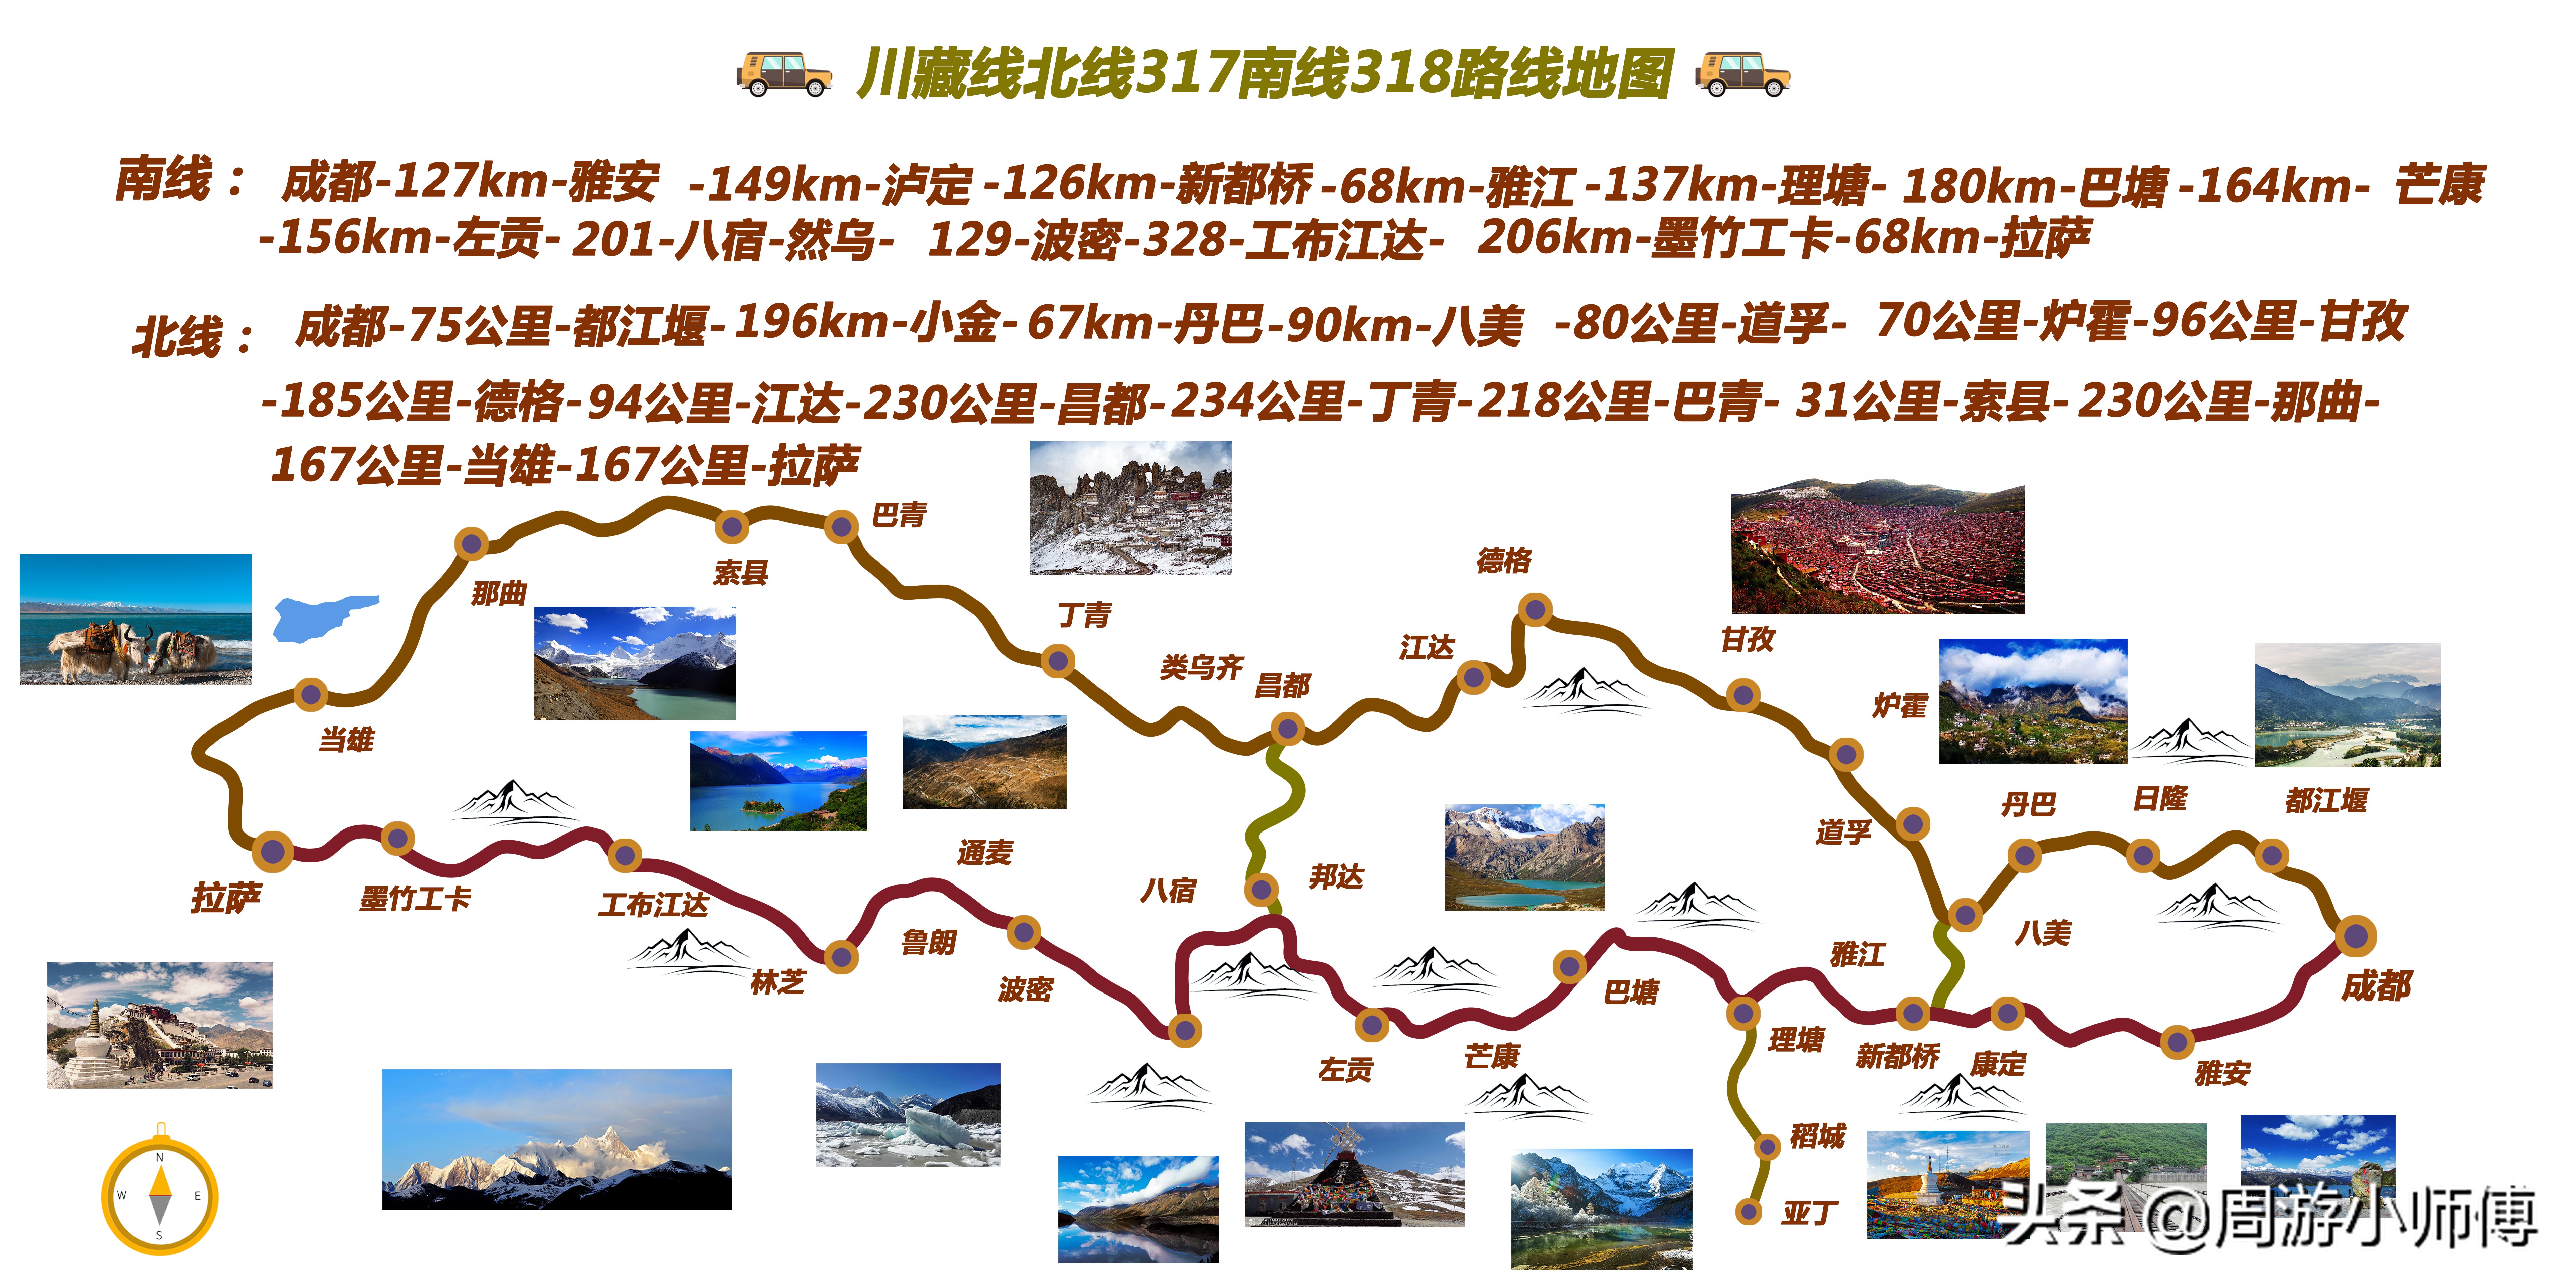 川藏线骑行装备清单「318川藏线骑行最佳路线图」